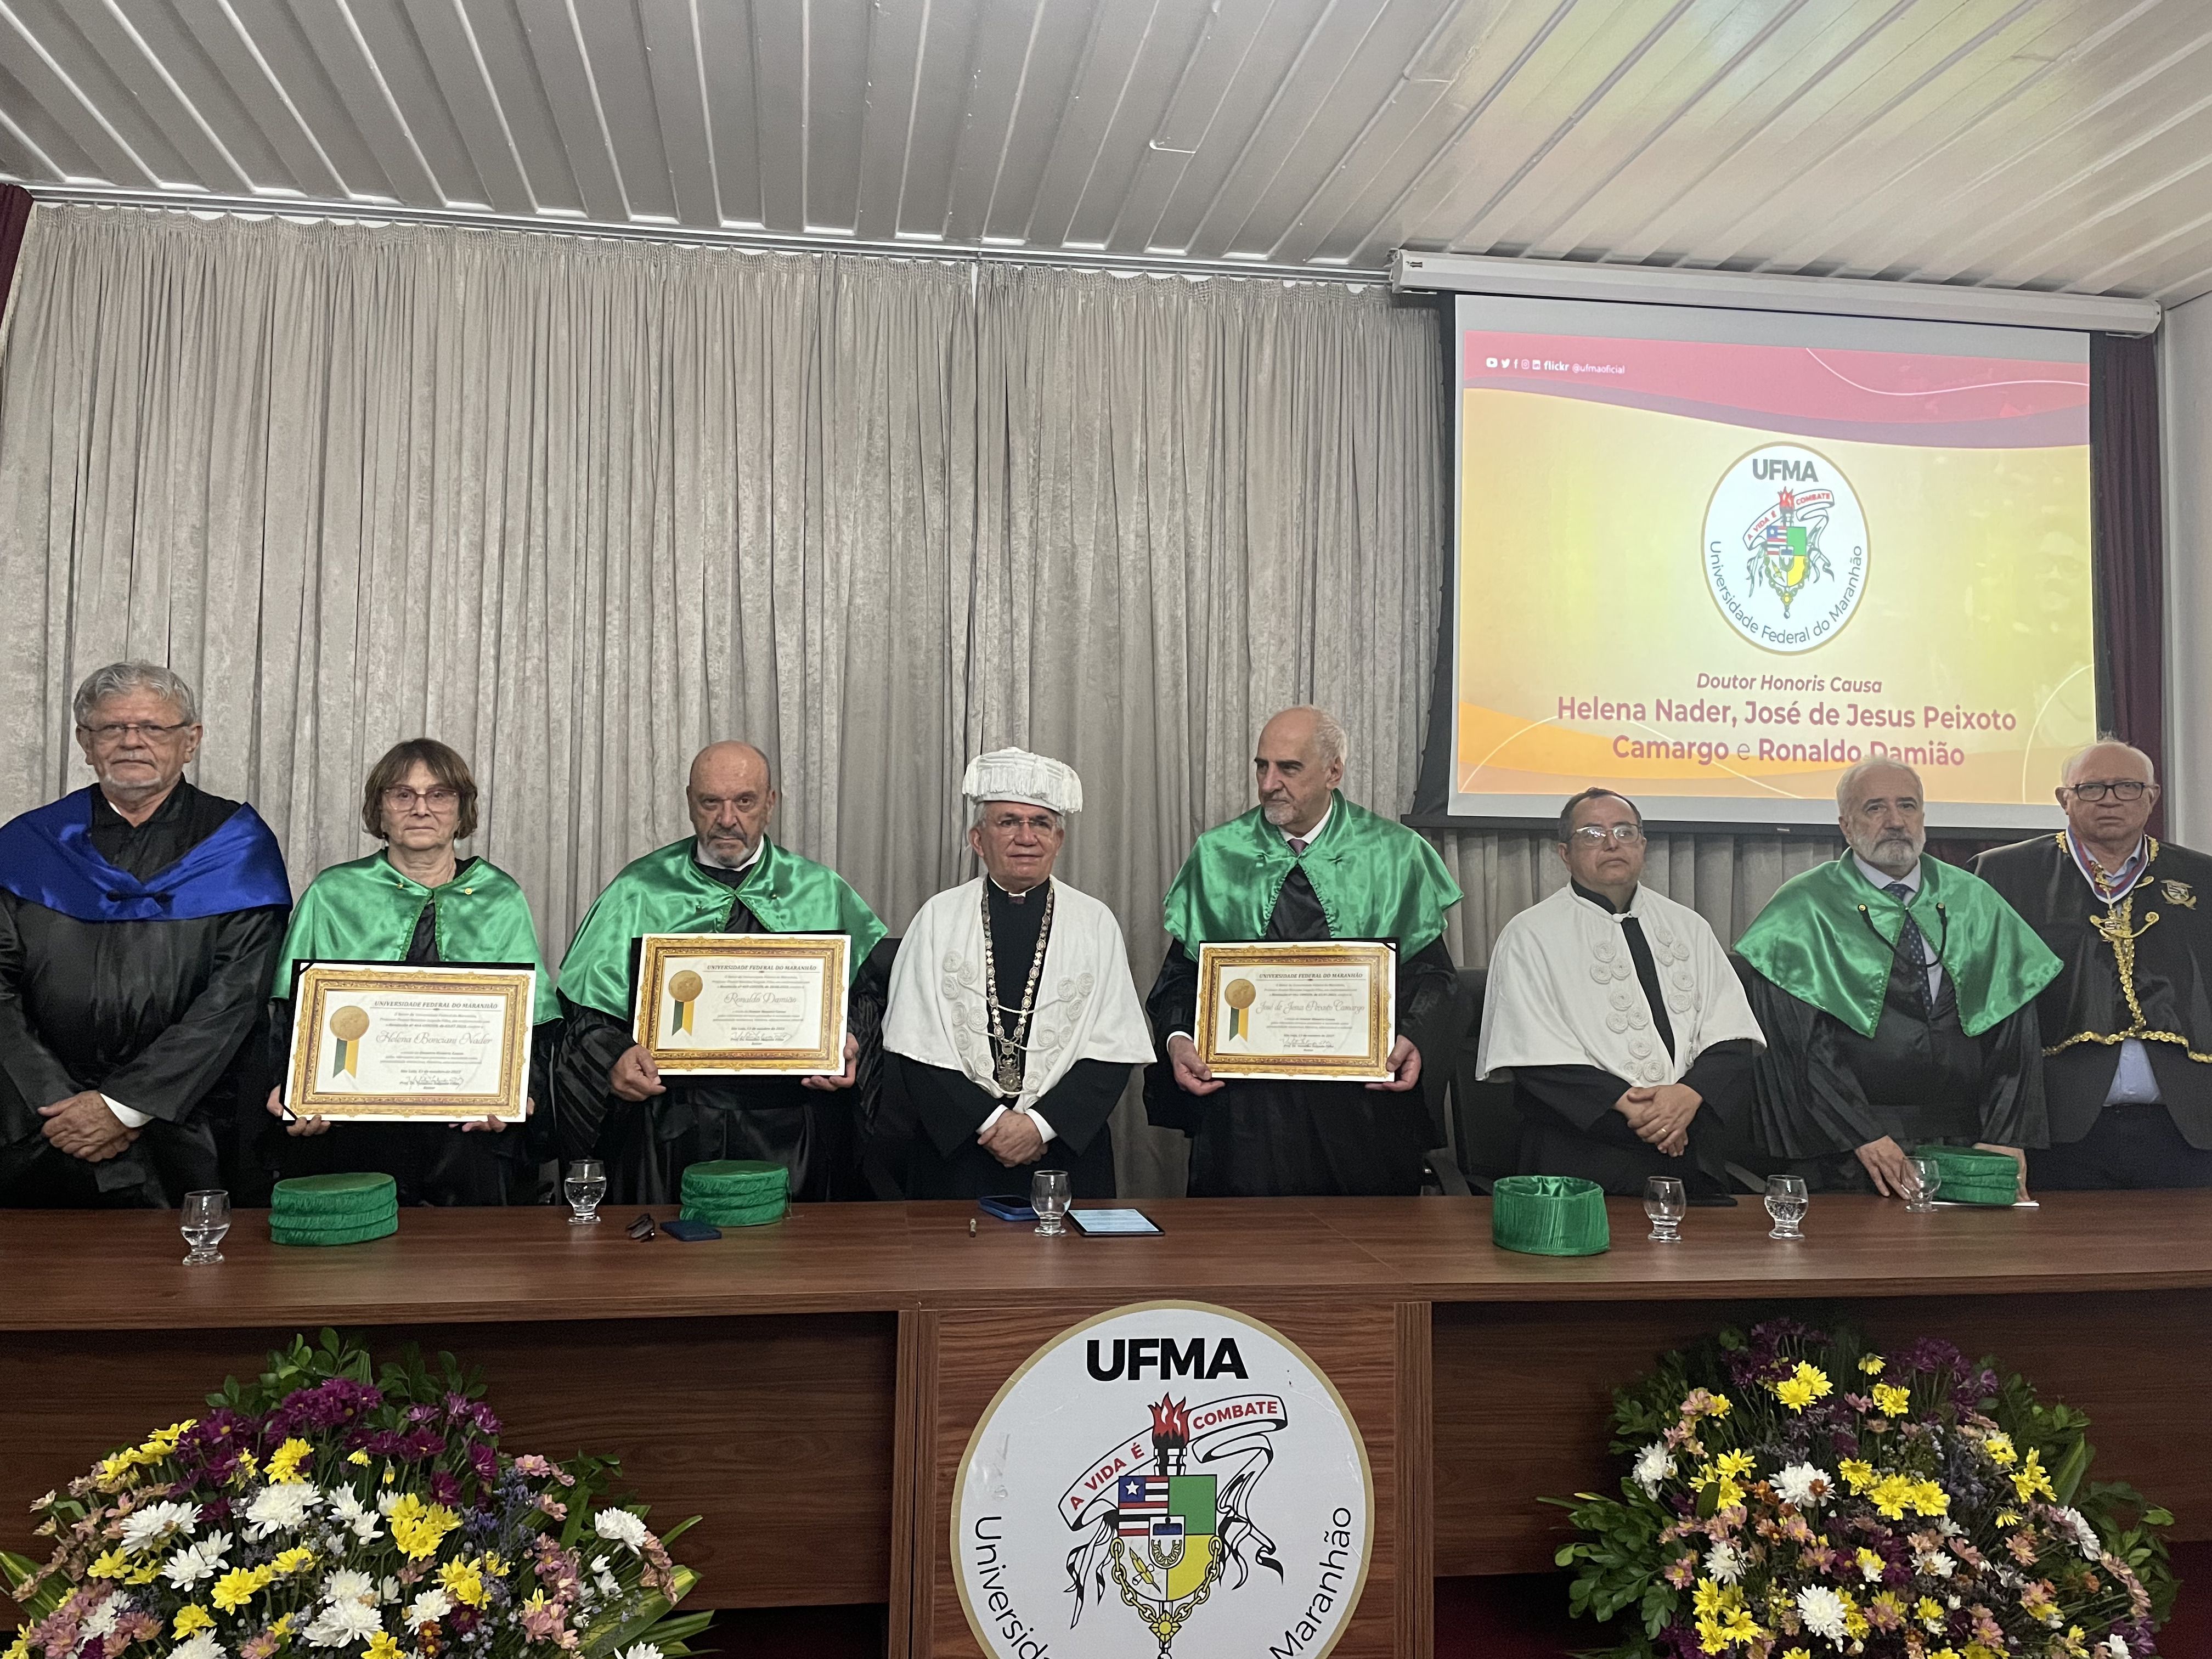 Helena Bonciani Nader, Ronaldo Damião e José de Jesus Peixoto Camargo recebem título Doutor Honoris Causa da UFMA